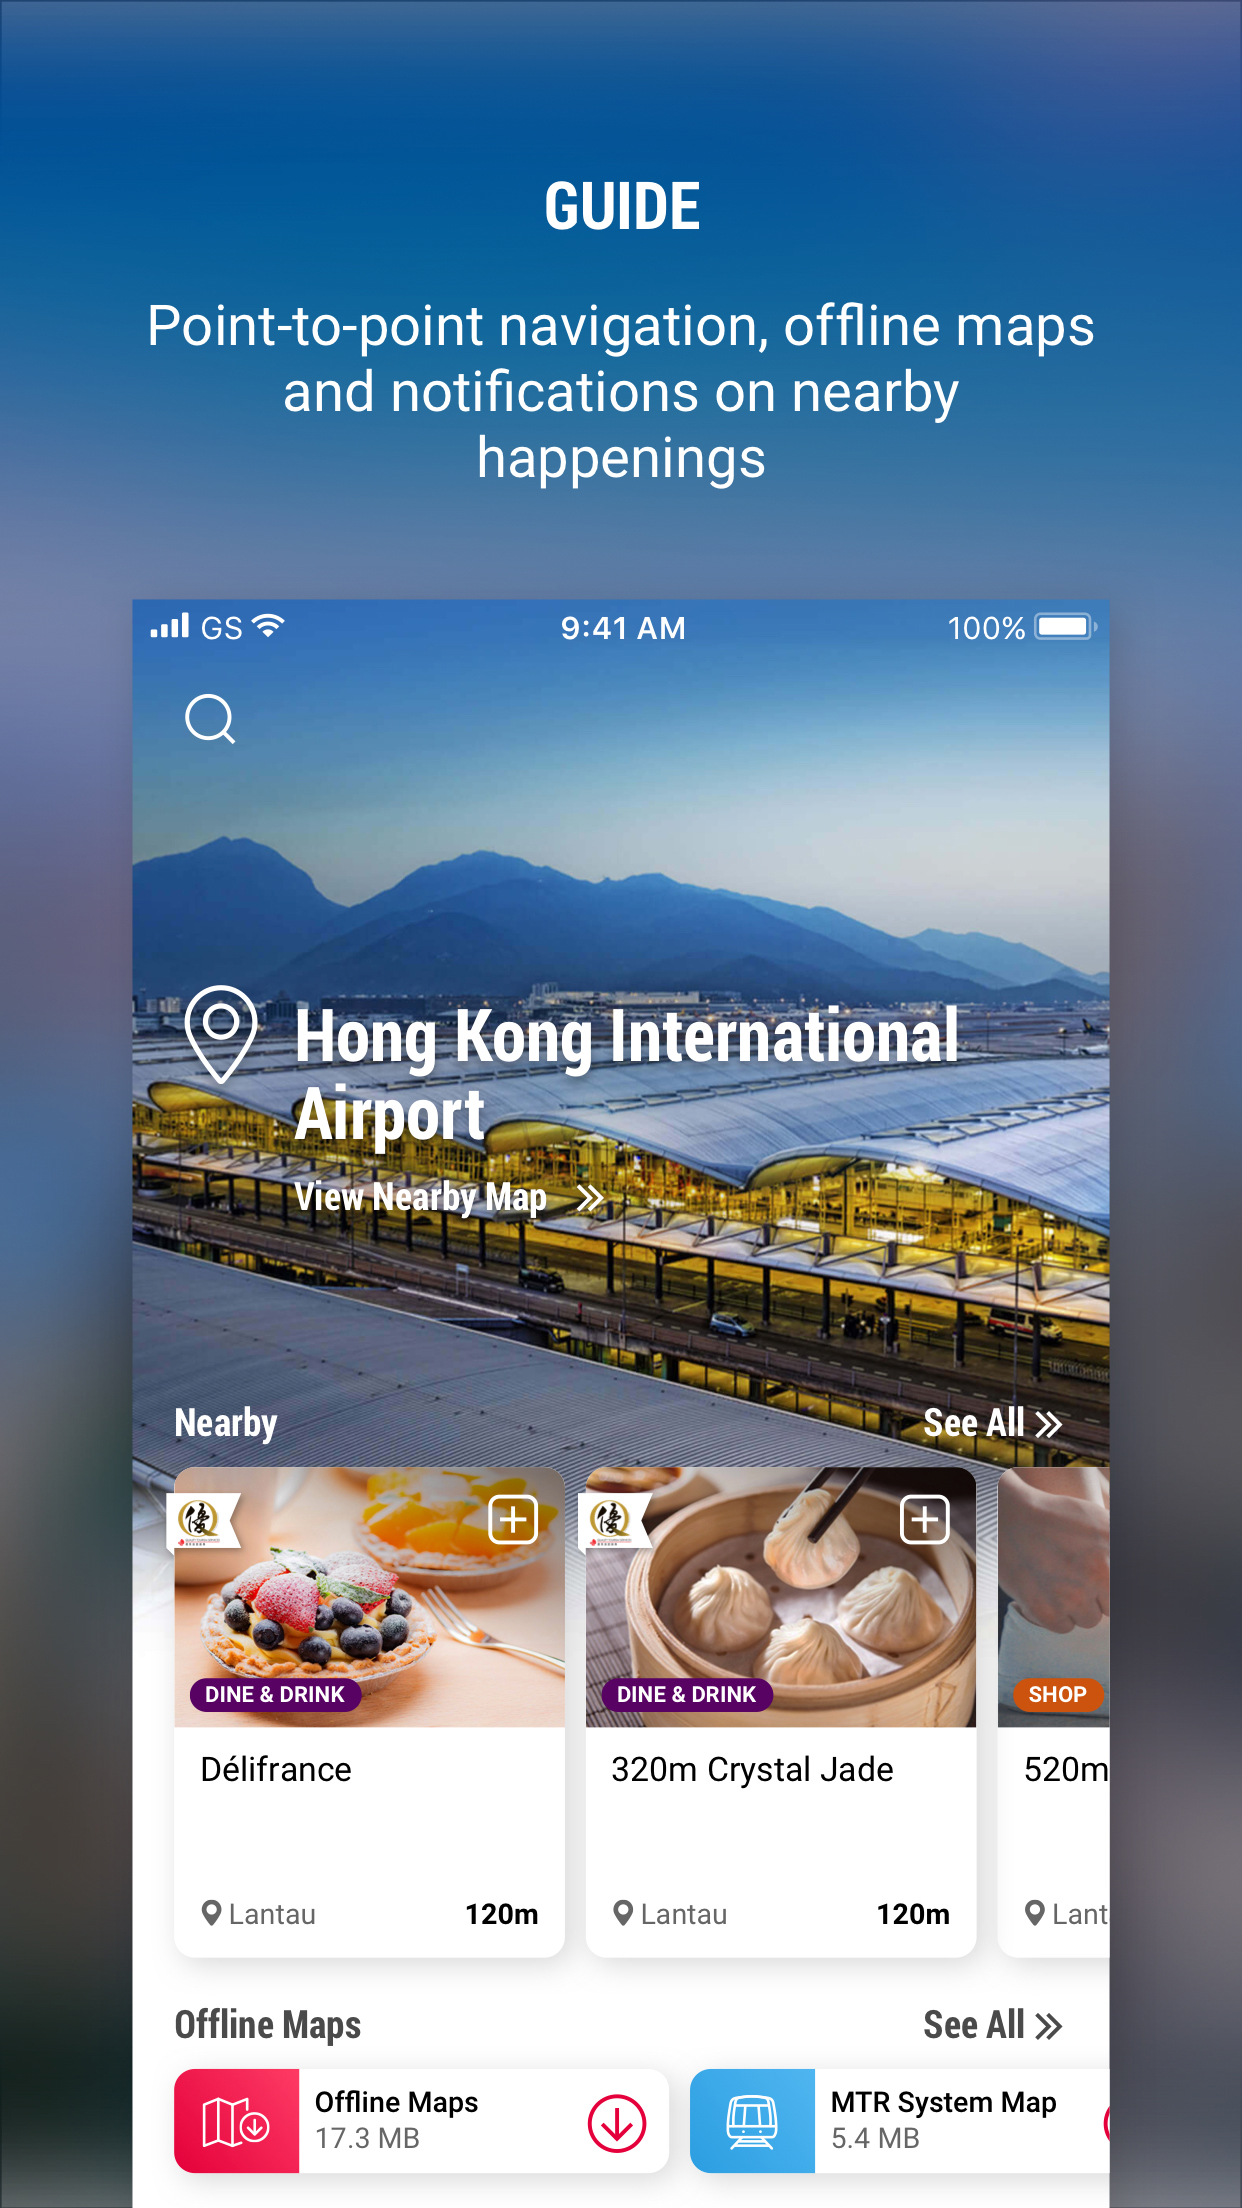 hong kong tourist prepaid sim